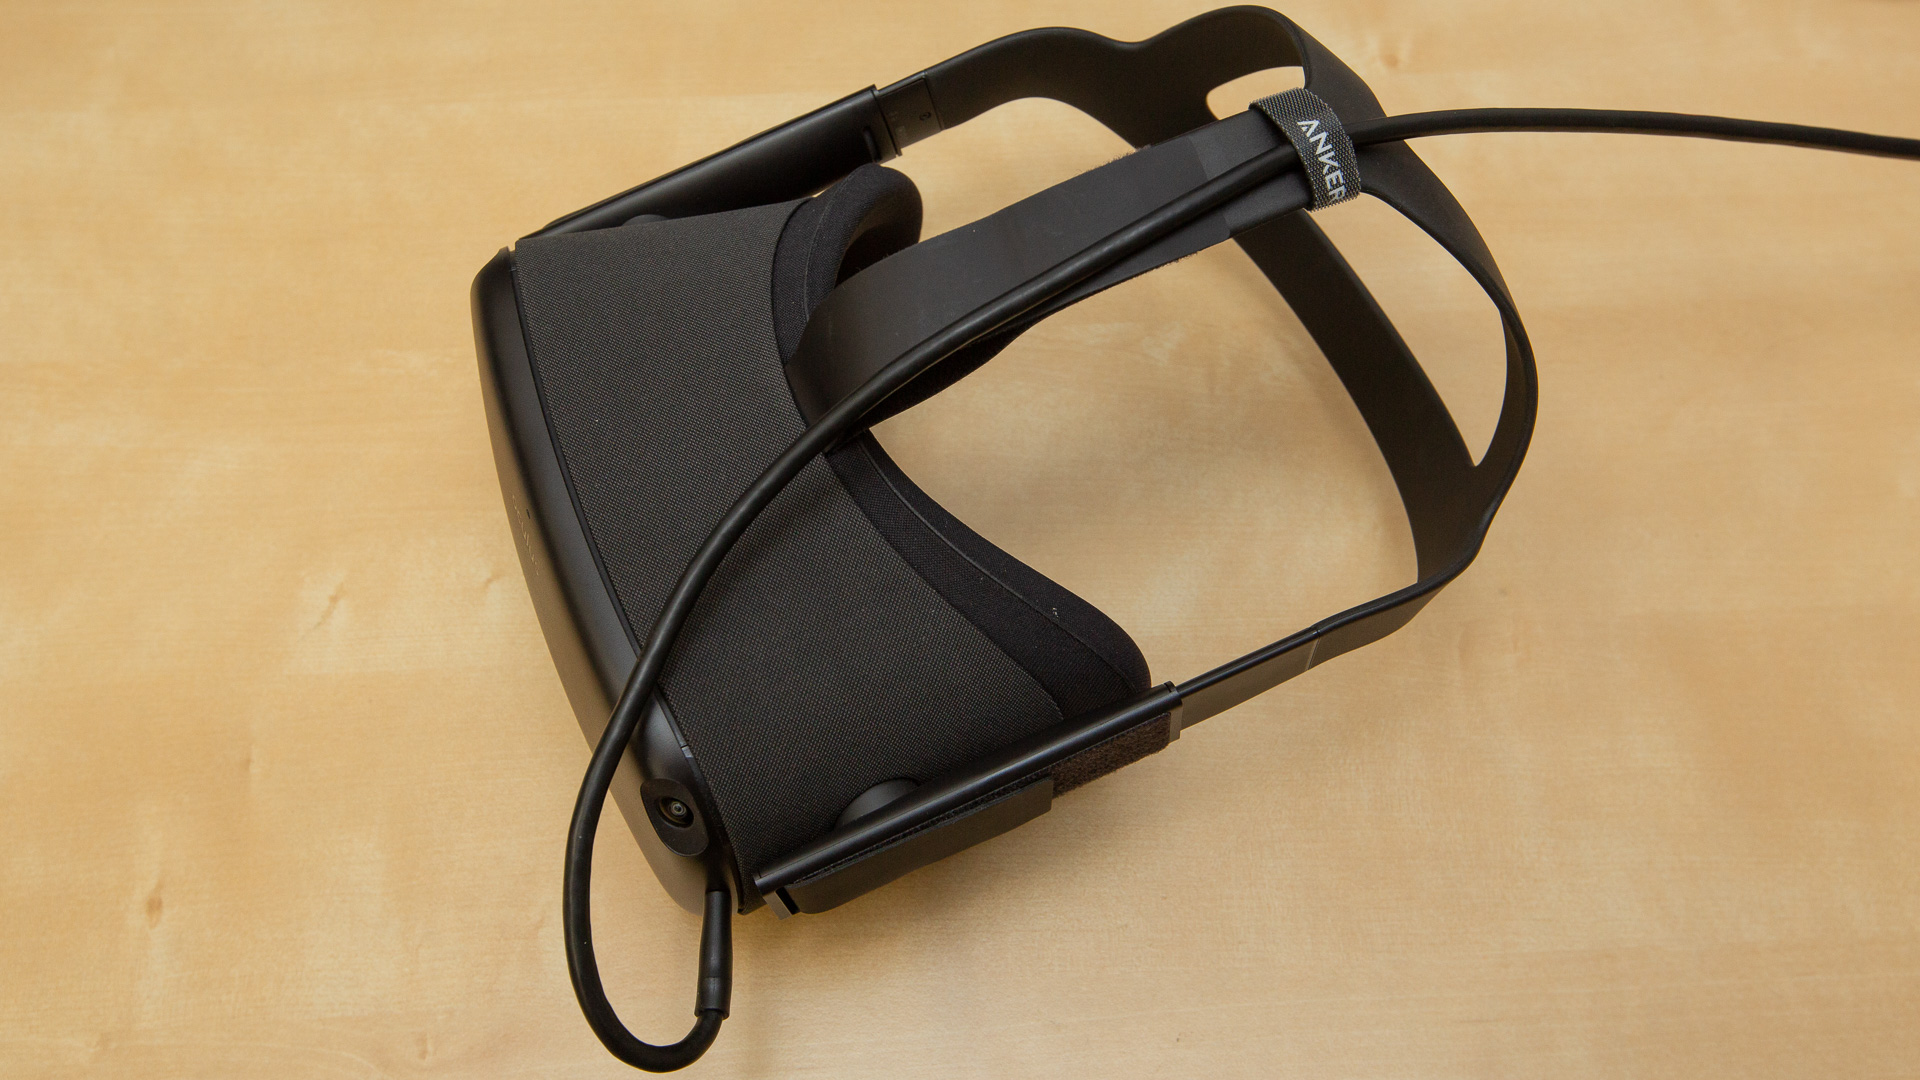 Carplink Support de Casque VR pour Casque de Réalité Virtuelle Oculus Rift S/Oculus Quest et Contrôleurs Tactiles VR Support daffichage VR Display Holder Accessoires VR 